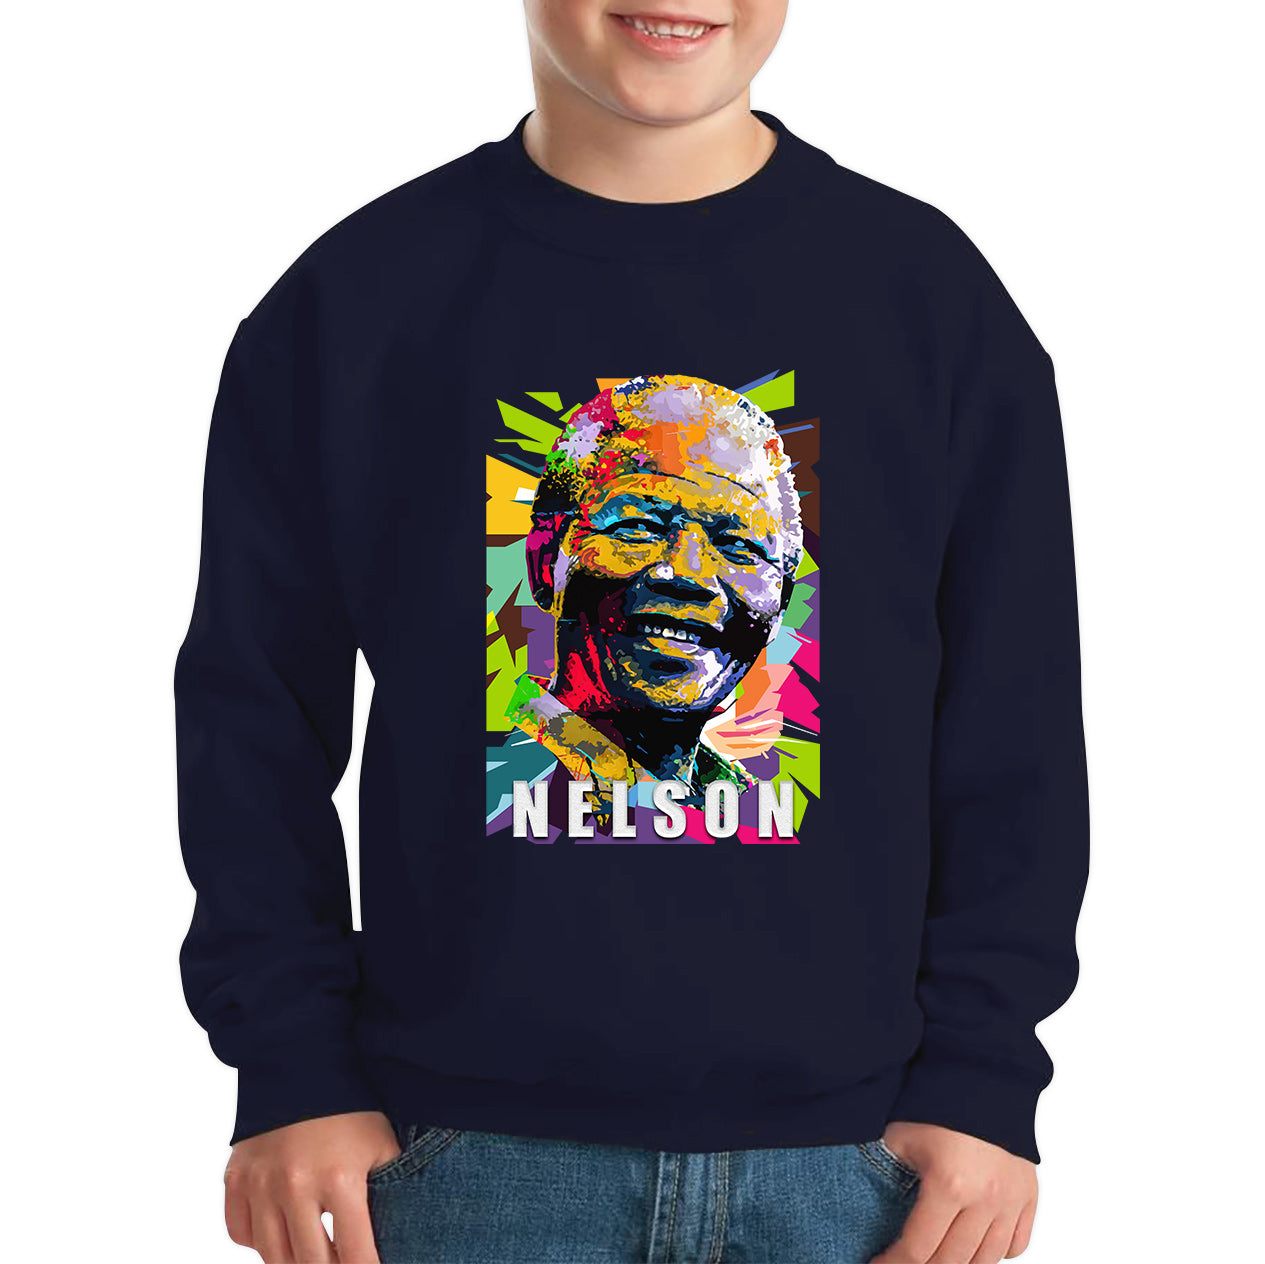 Nelson Mandela African freedom justice Political Leader Former President of South Africa Kids Jumper